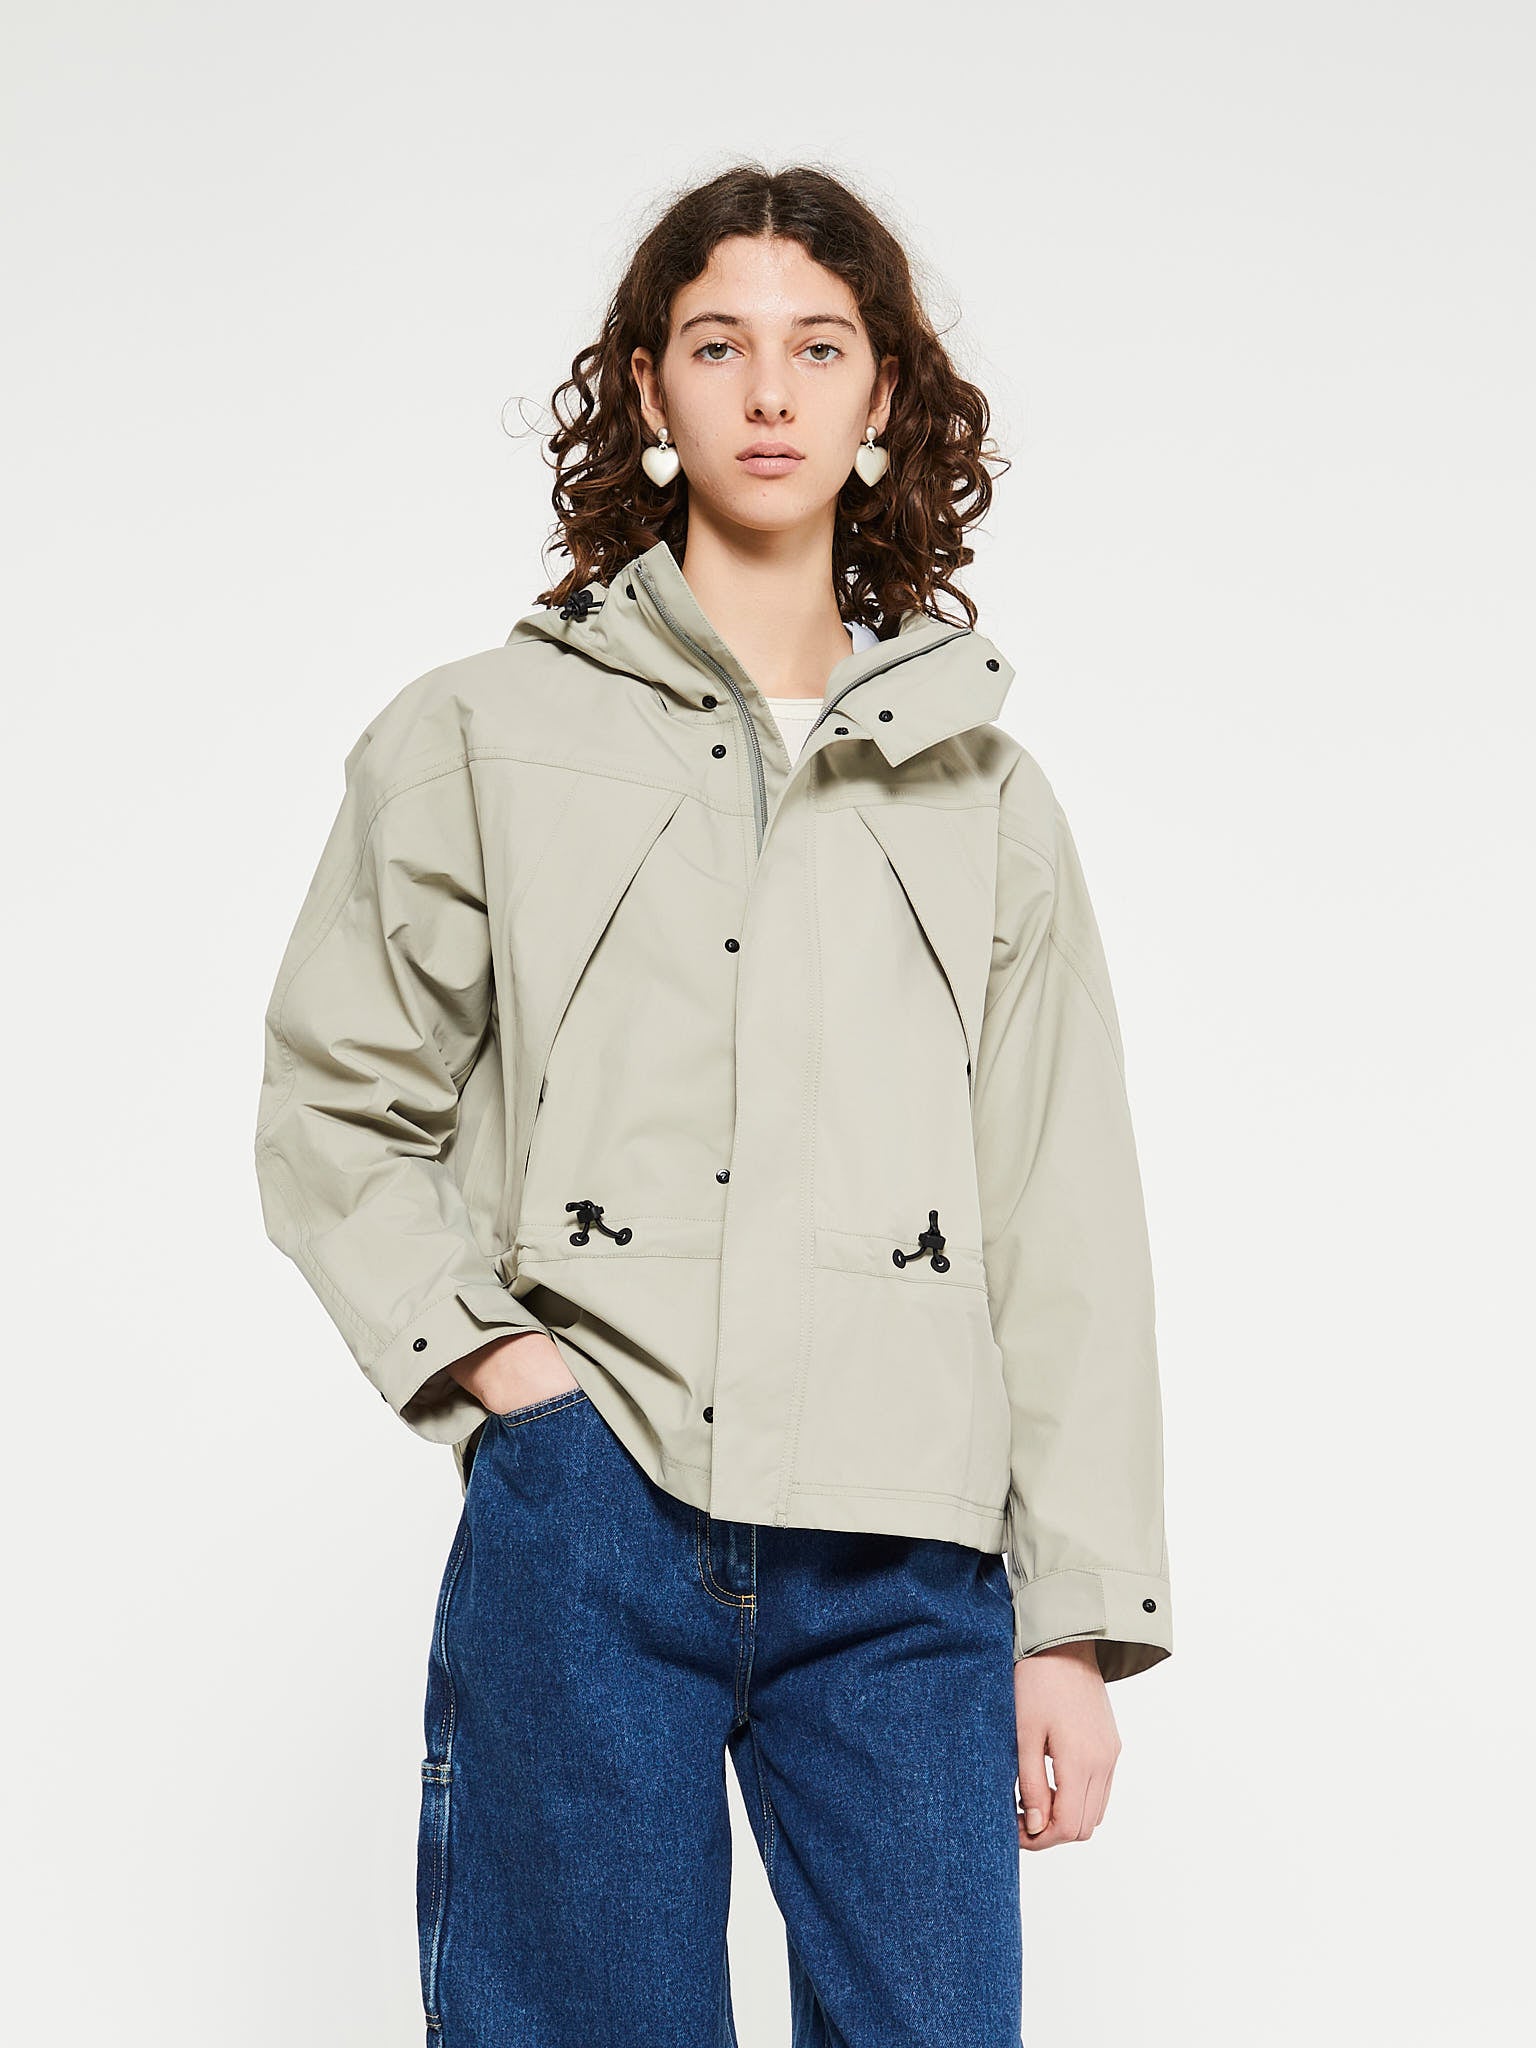 Argstar Lightweight Jacket for Women, Polar Fleece Full Zip Classic Soft  Casual Recreation Coat with Zipper Pockets Hunter Green XS at  Women's  Coats Shop